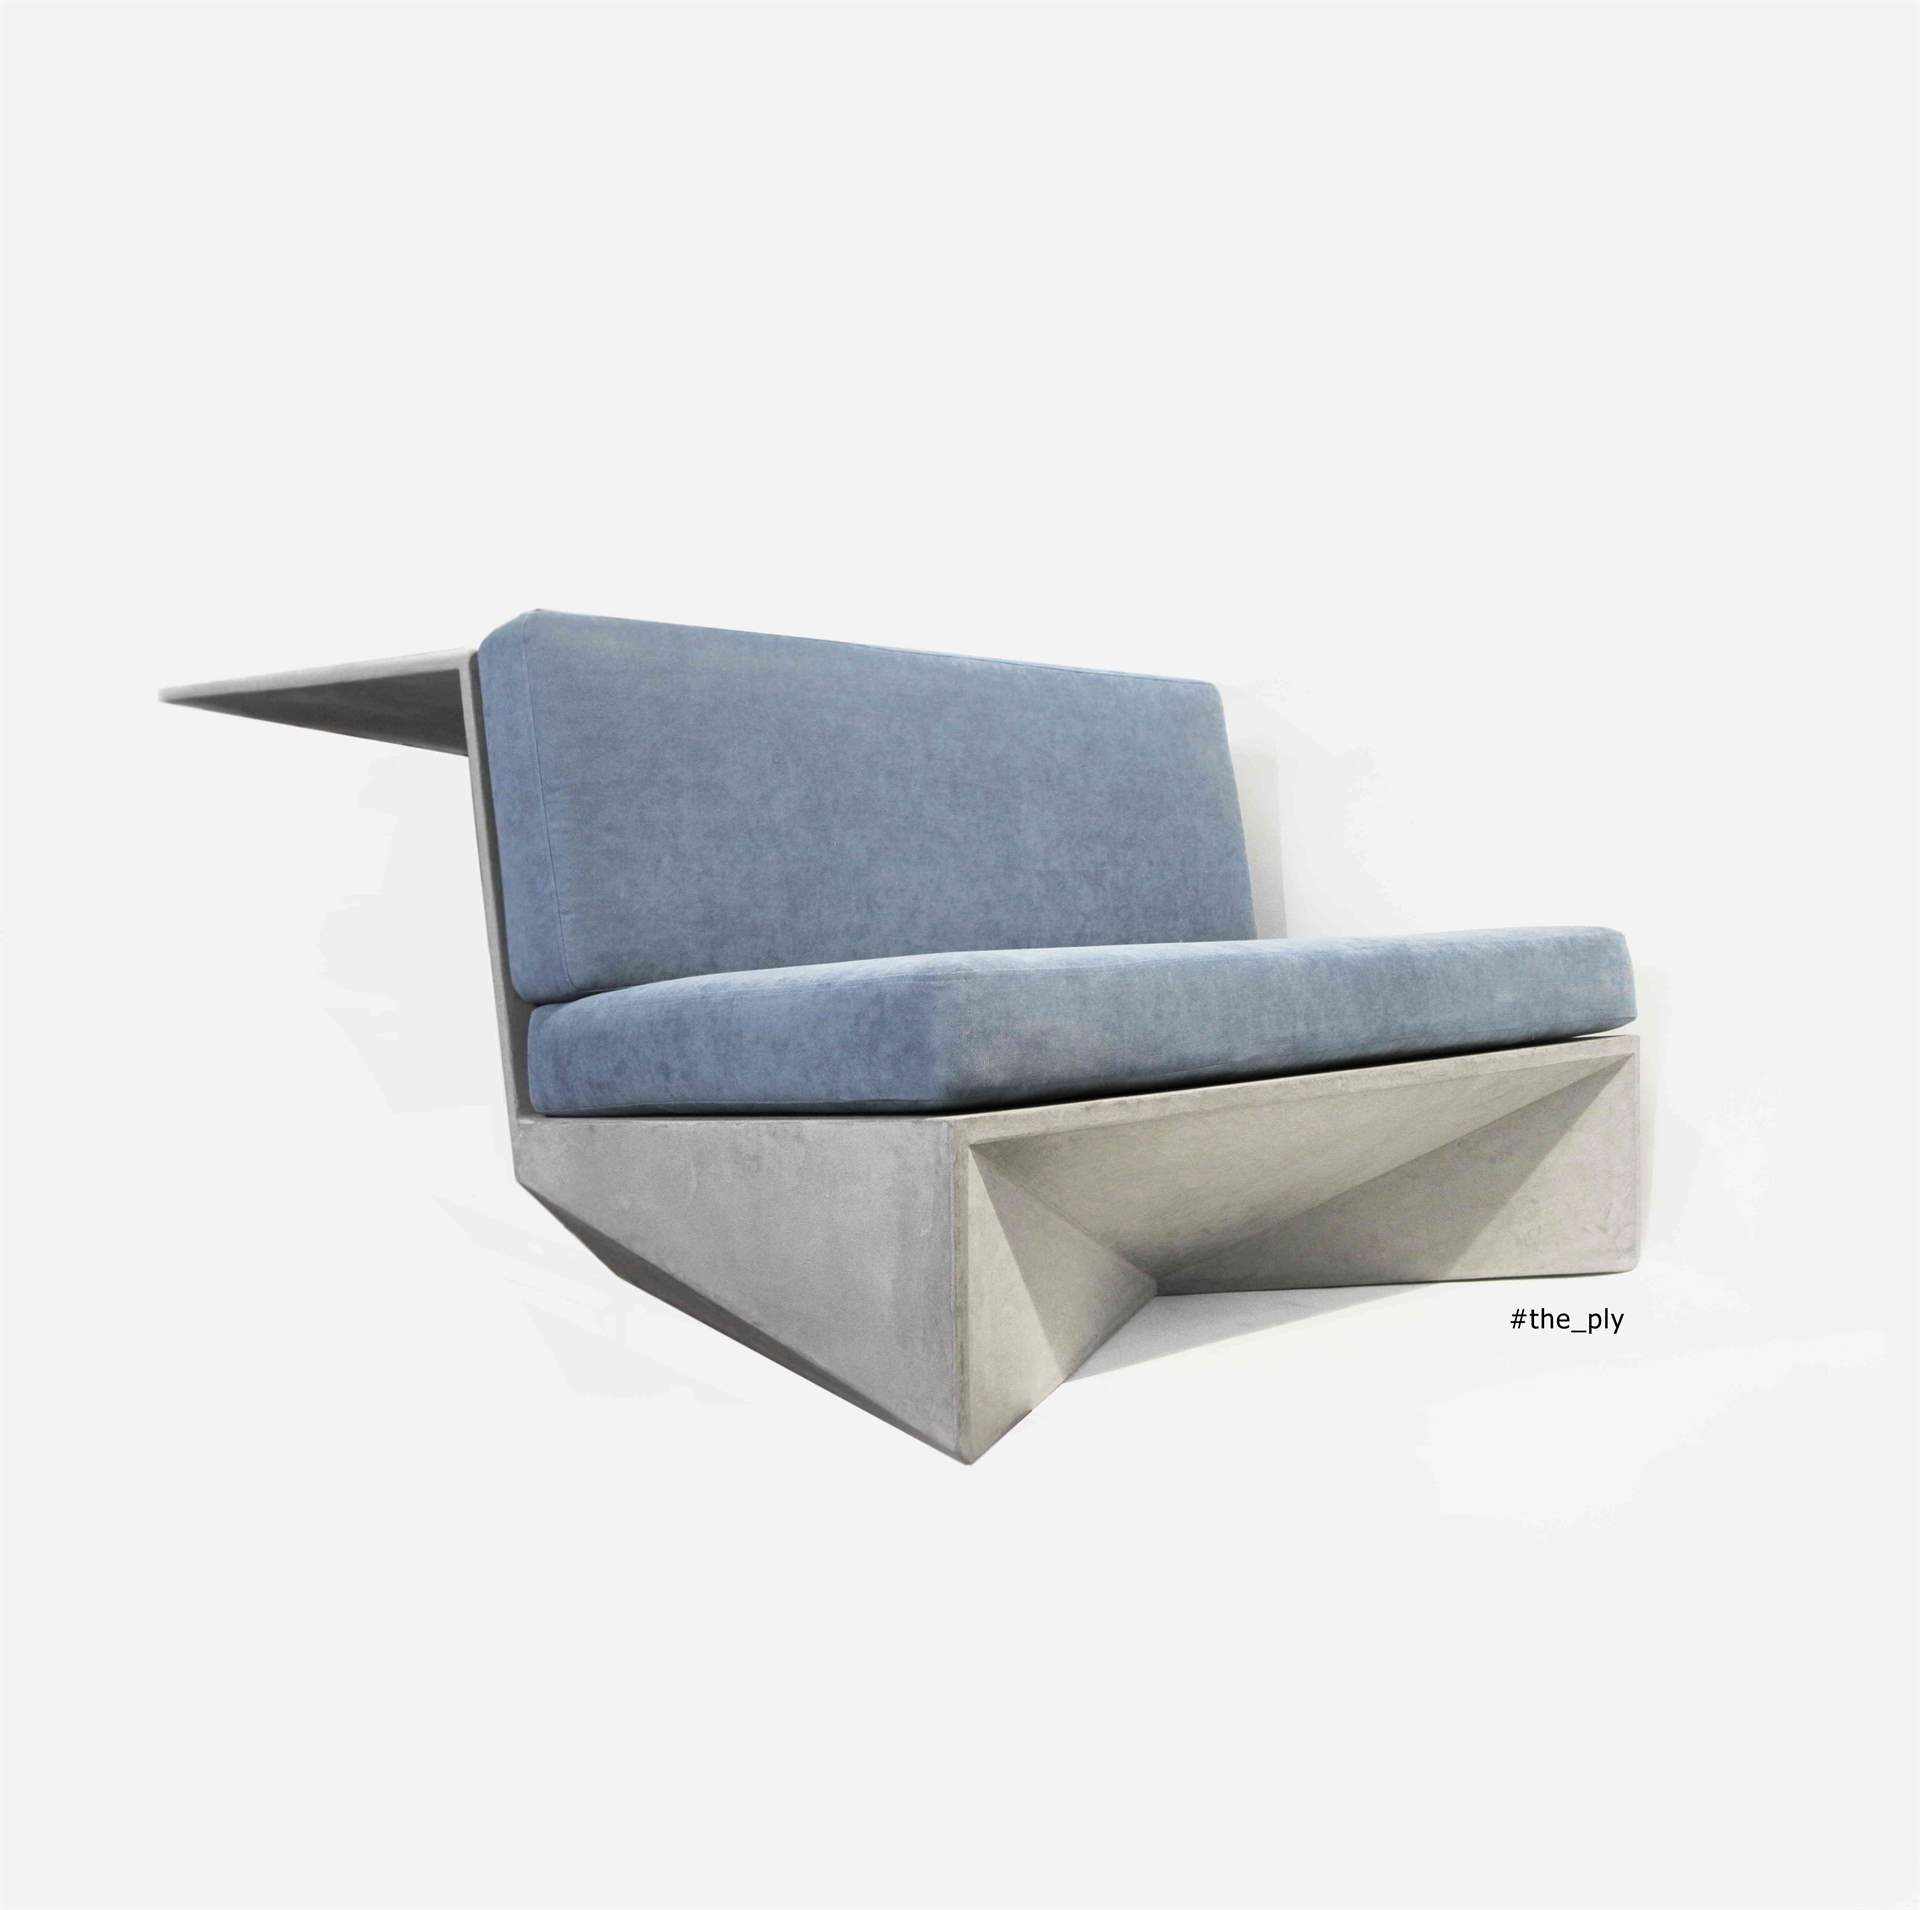 Canapé en béton ciré de couleur grise avec des coussins bleus.